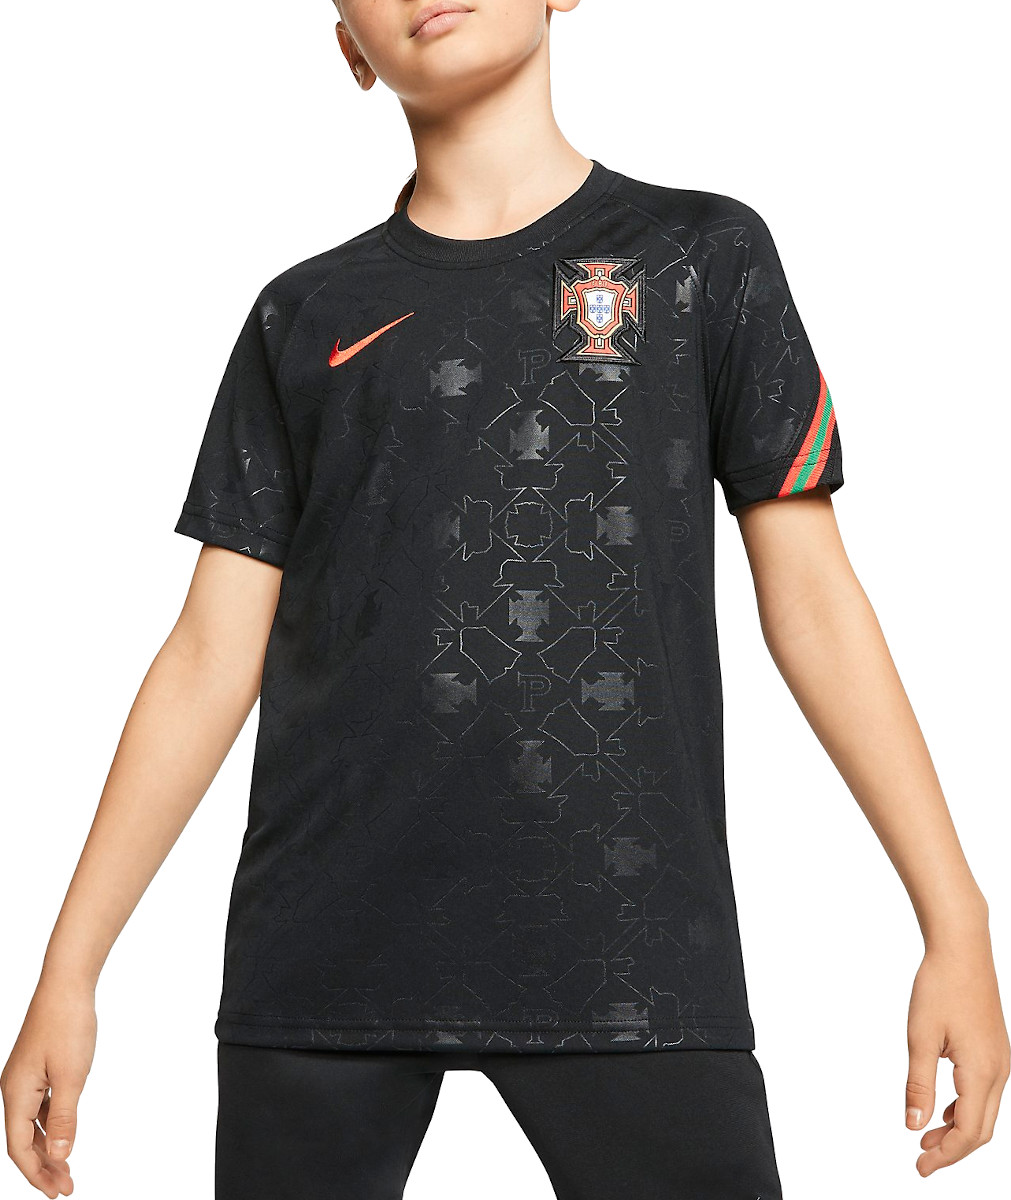 Dětské fotbalové tričko s krátkým rukávem Nike Portugal